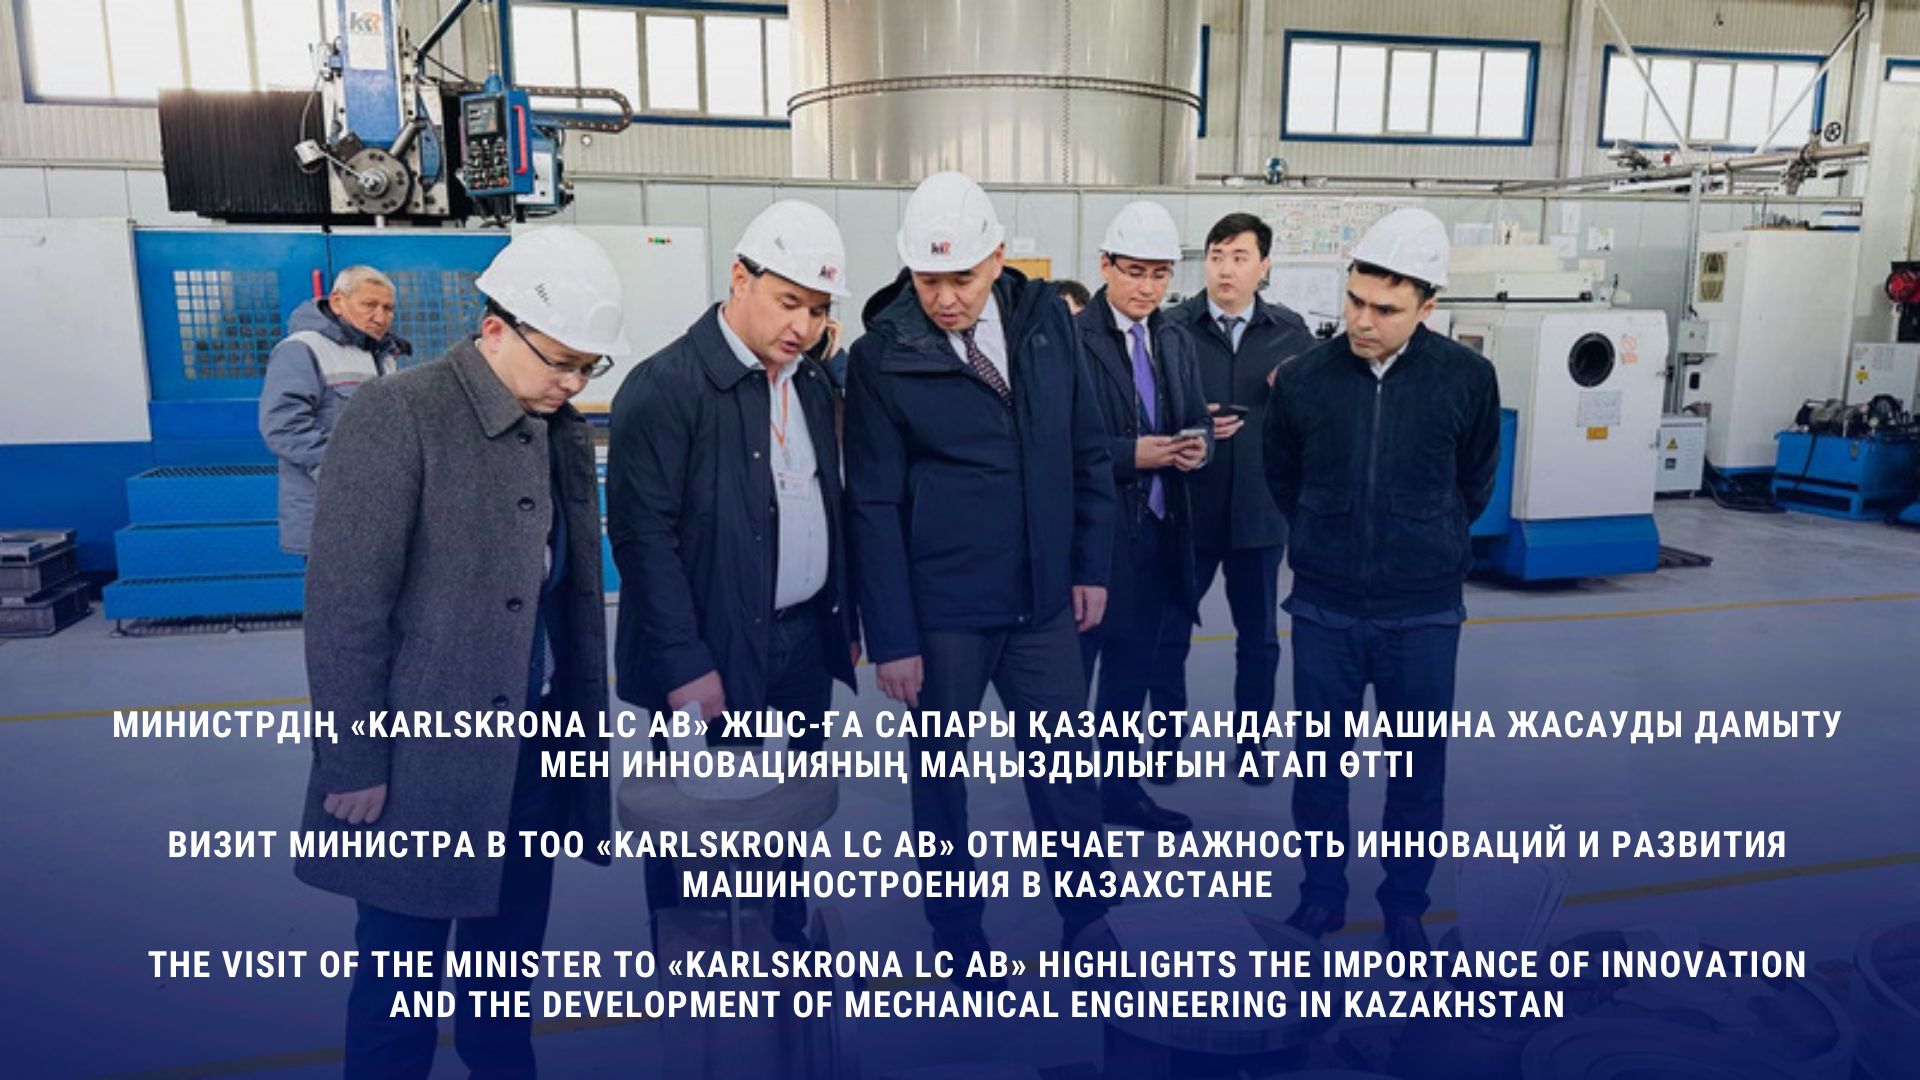 Визит министра в ТОО «KARLSKRONA LC AB» отмечает важность инноваций и развития машиностроения в Казахстане